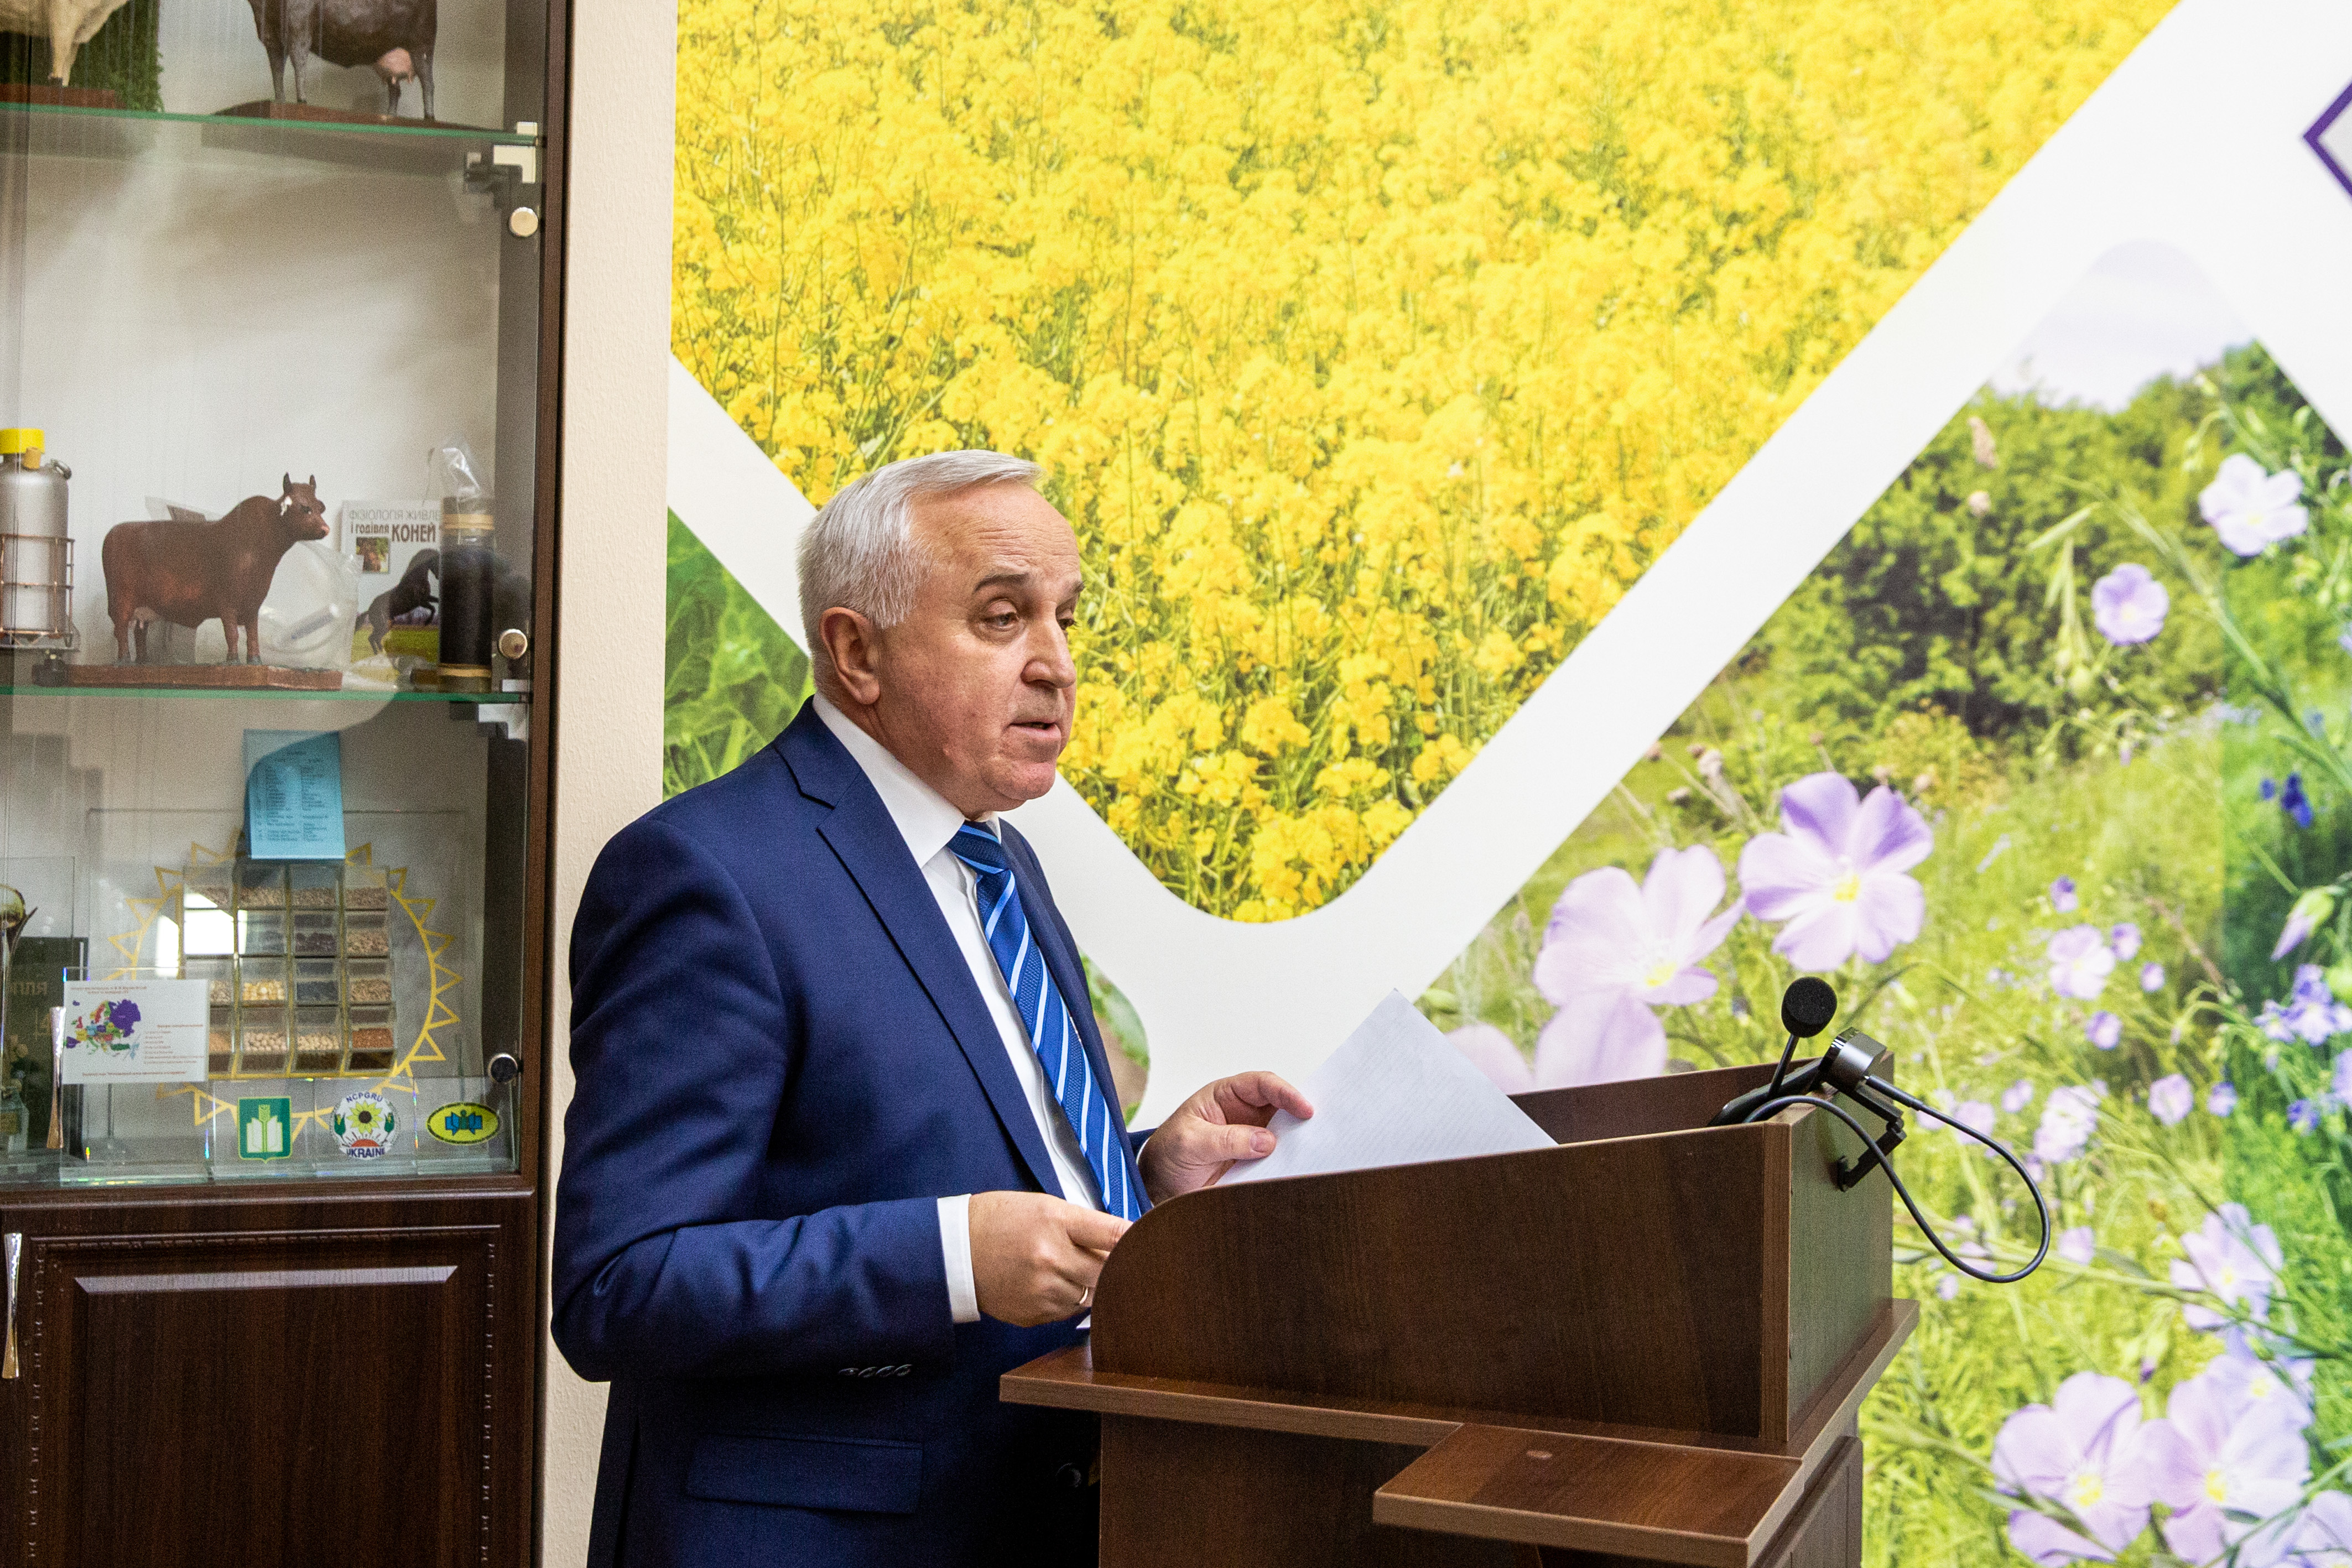 Сьогодні Українська Держава має бути надійним партнером сільгоспвиробників, сприяти їх стабільному розвитку і виступати гарантом захисту їх інтересів, - Ярослав Гадзало